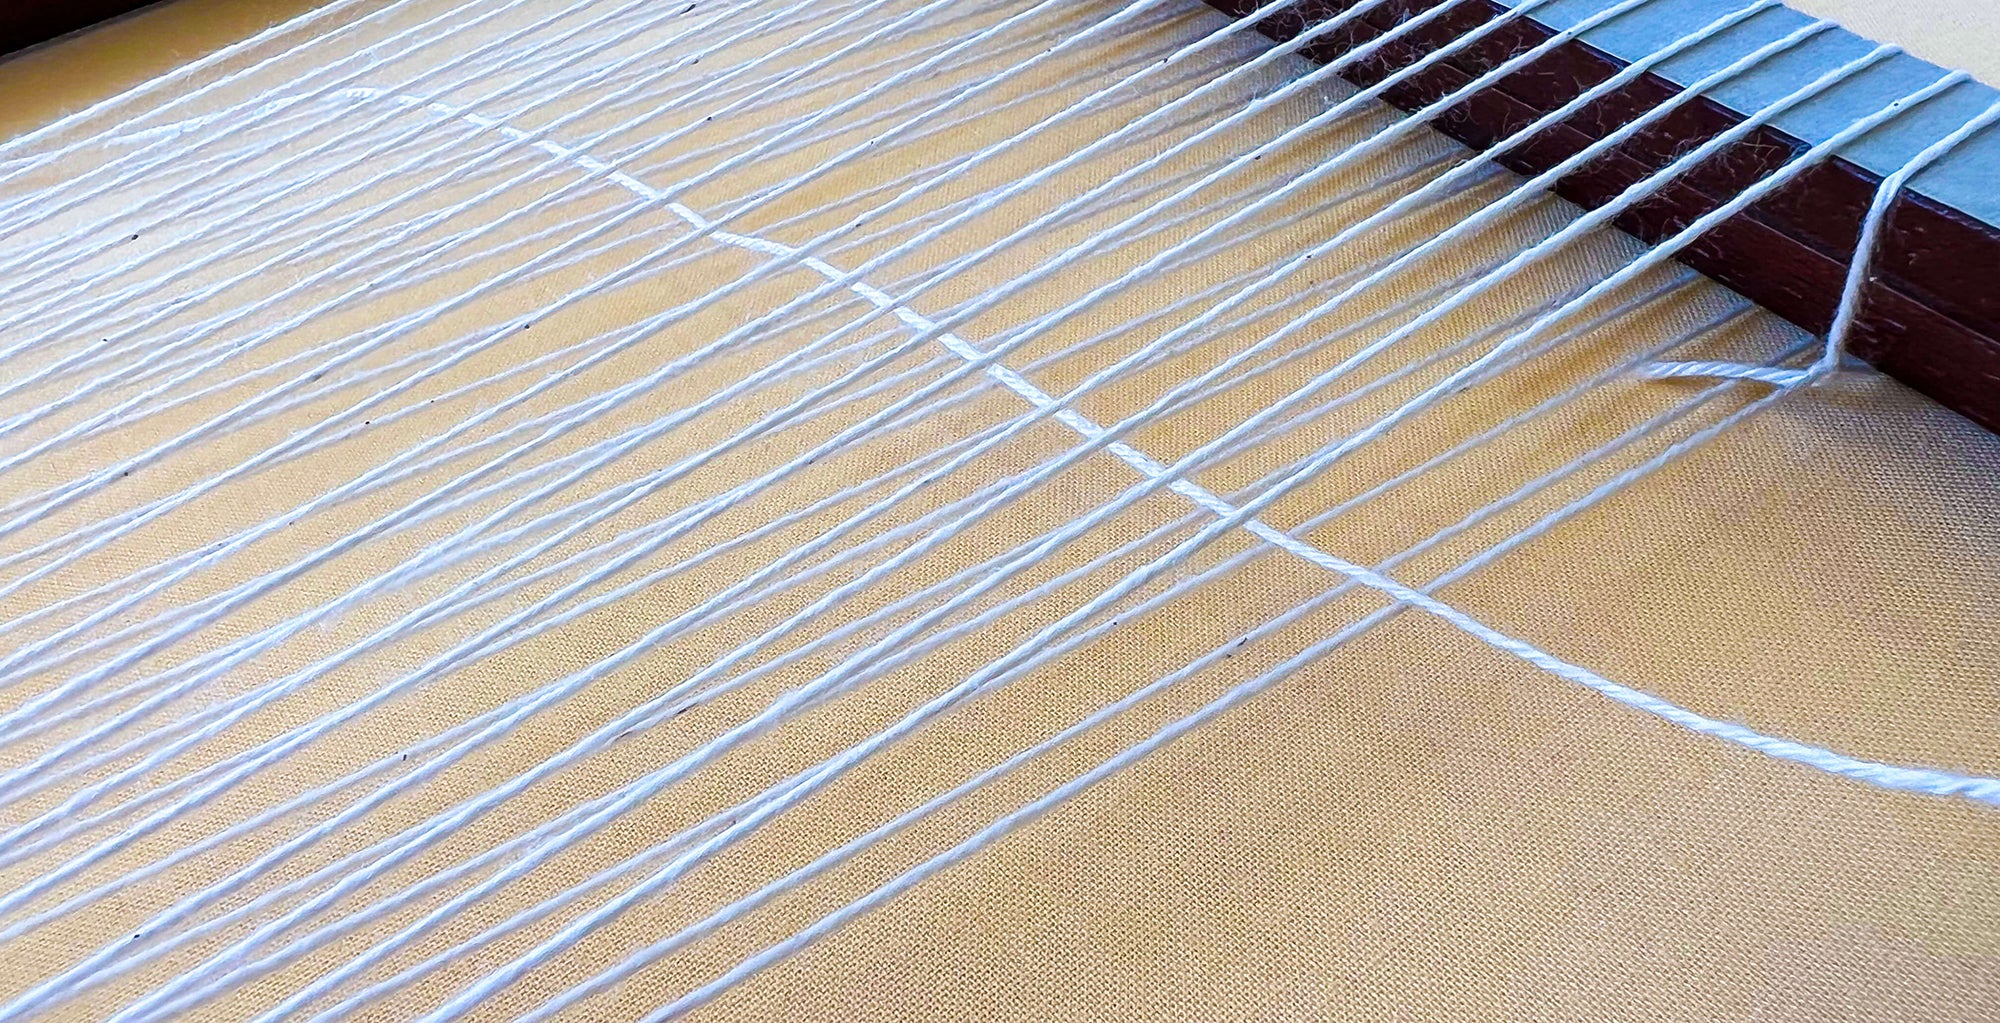 string going through space in warp threads